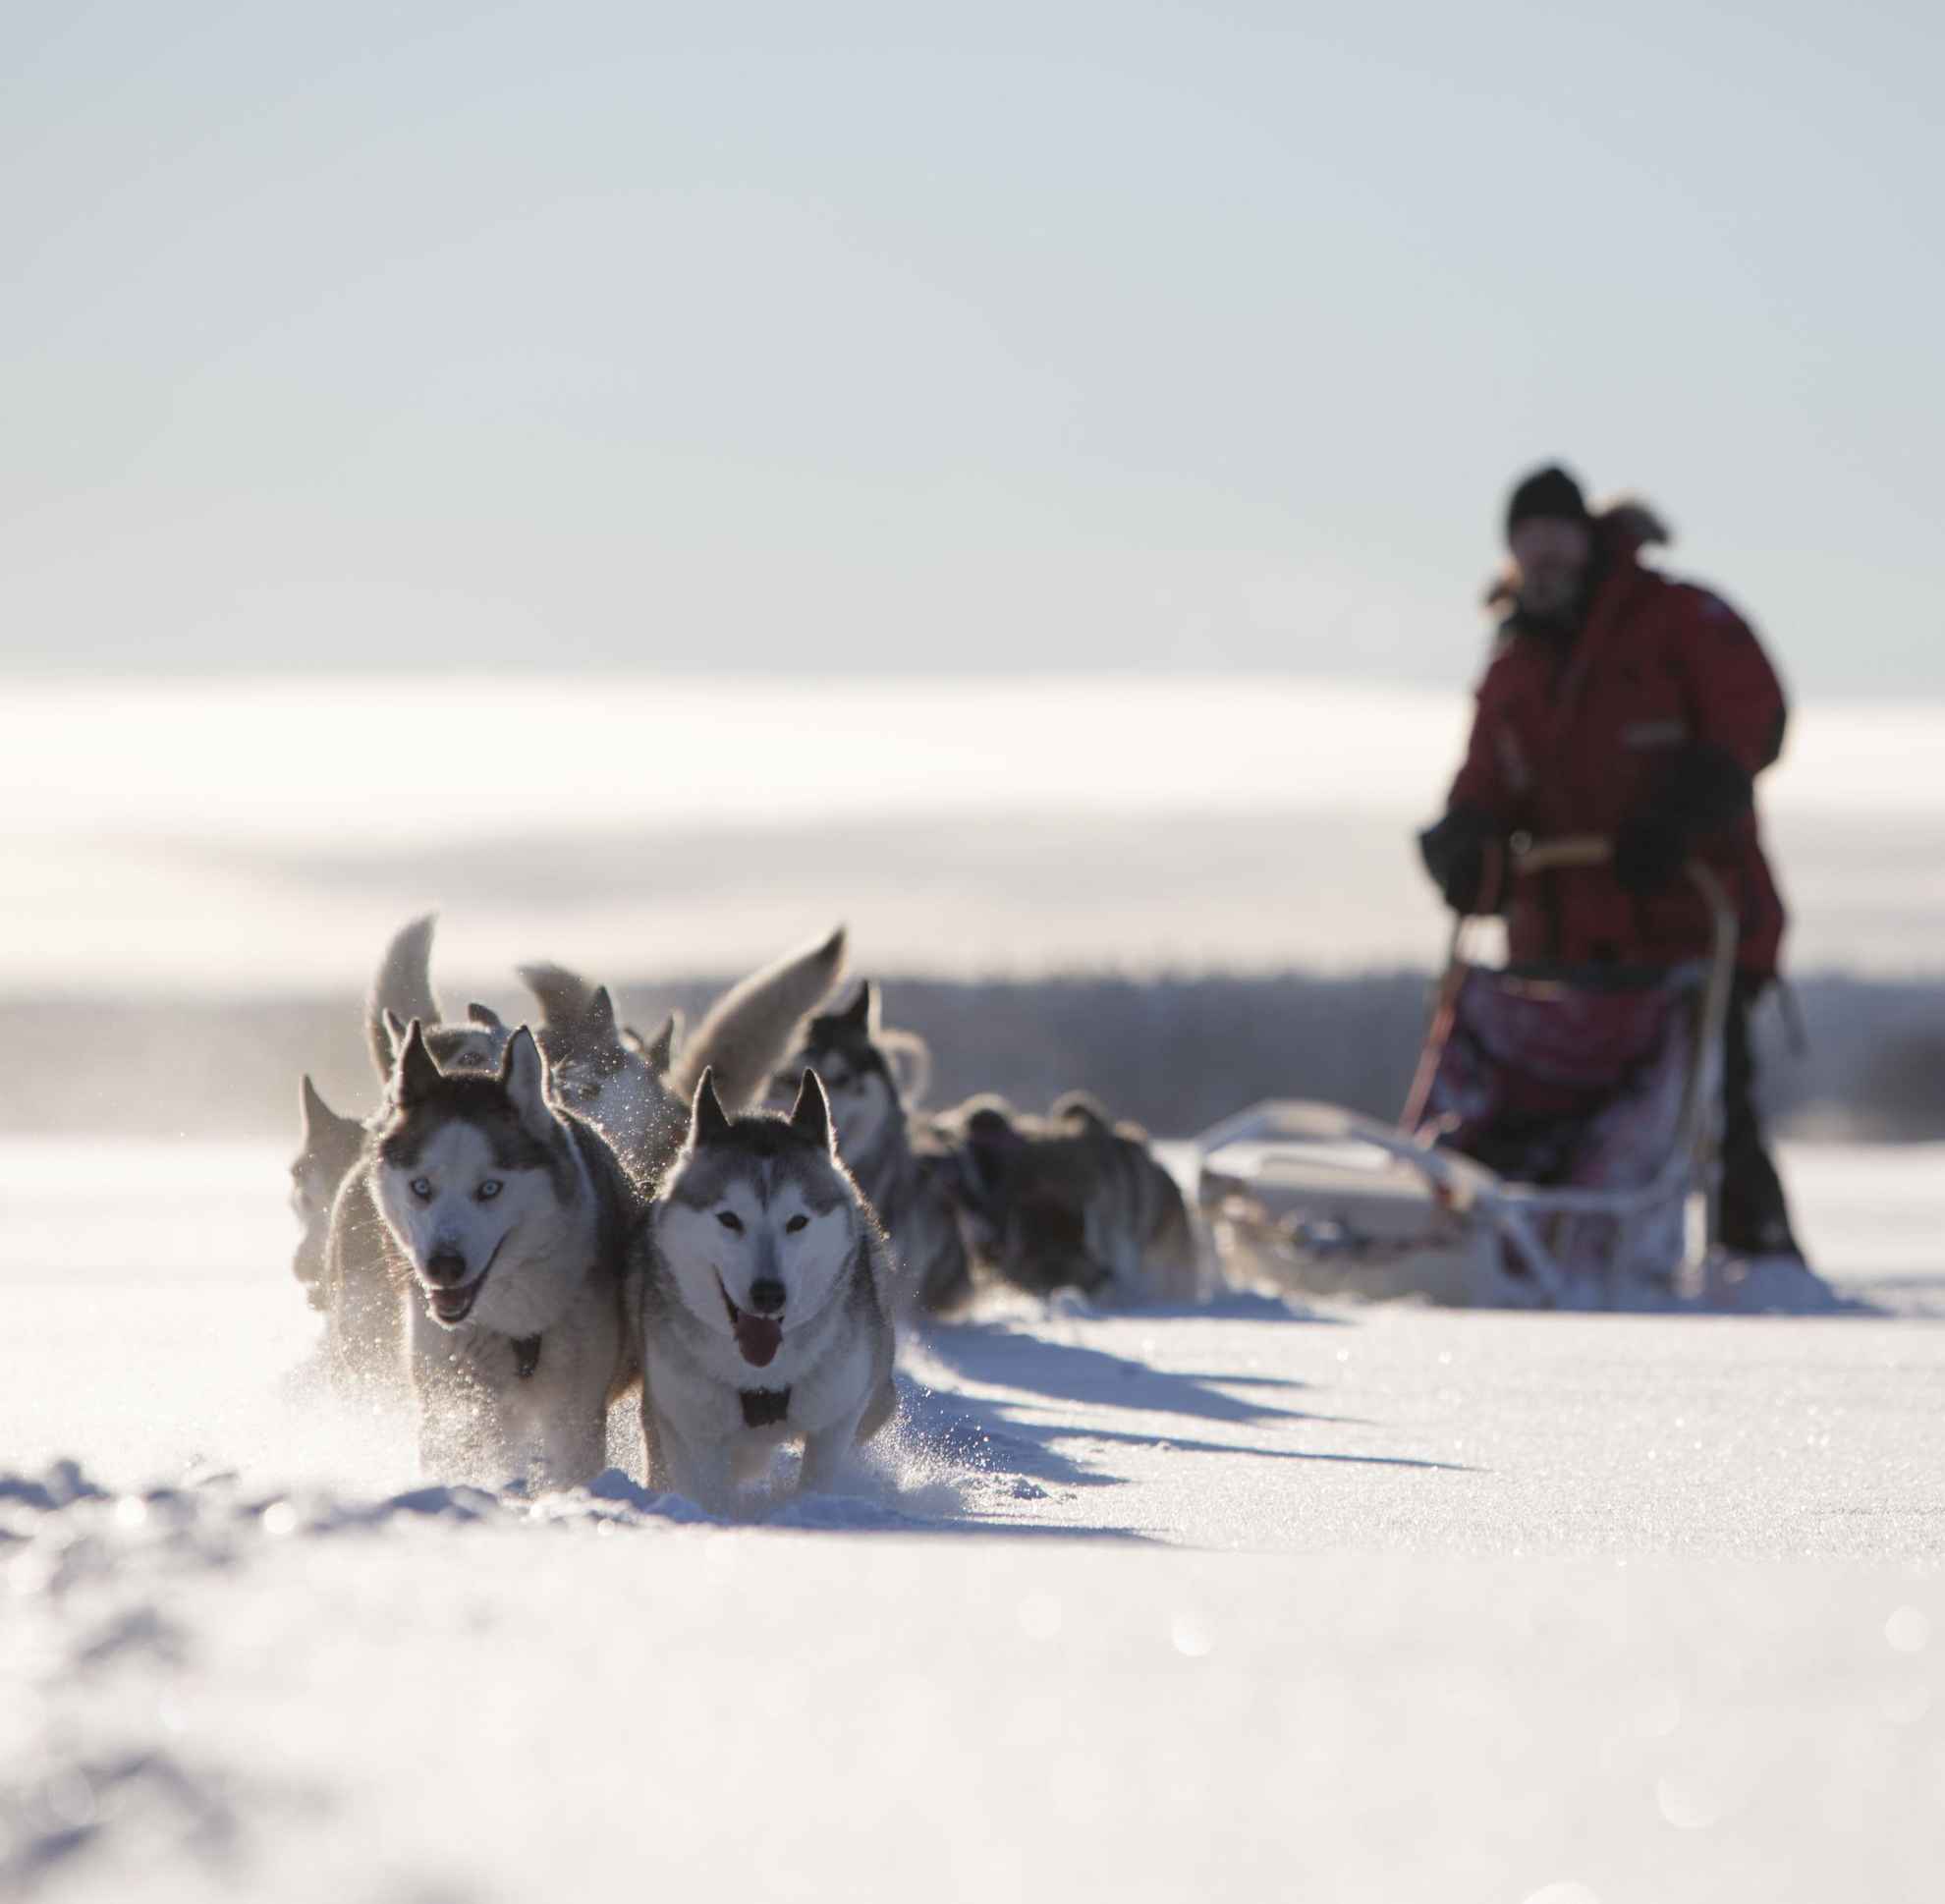 Huskies in Zweierreihen ziehen ein Schlitten durch den Tiefschnee einer sonnigen Landschaft. Hinten auf dem Schlitten steht ein Mann.